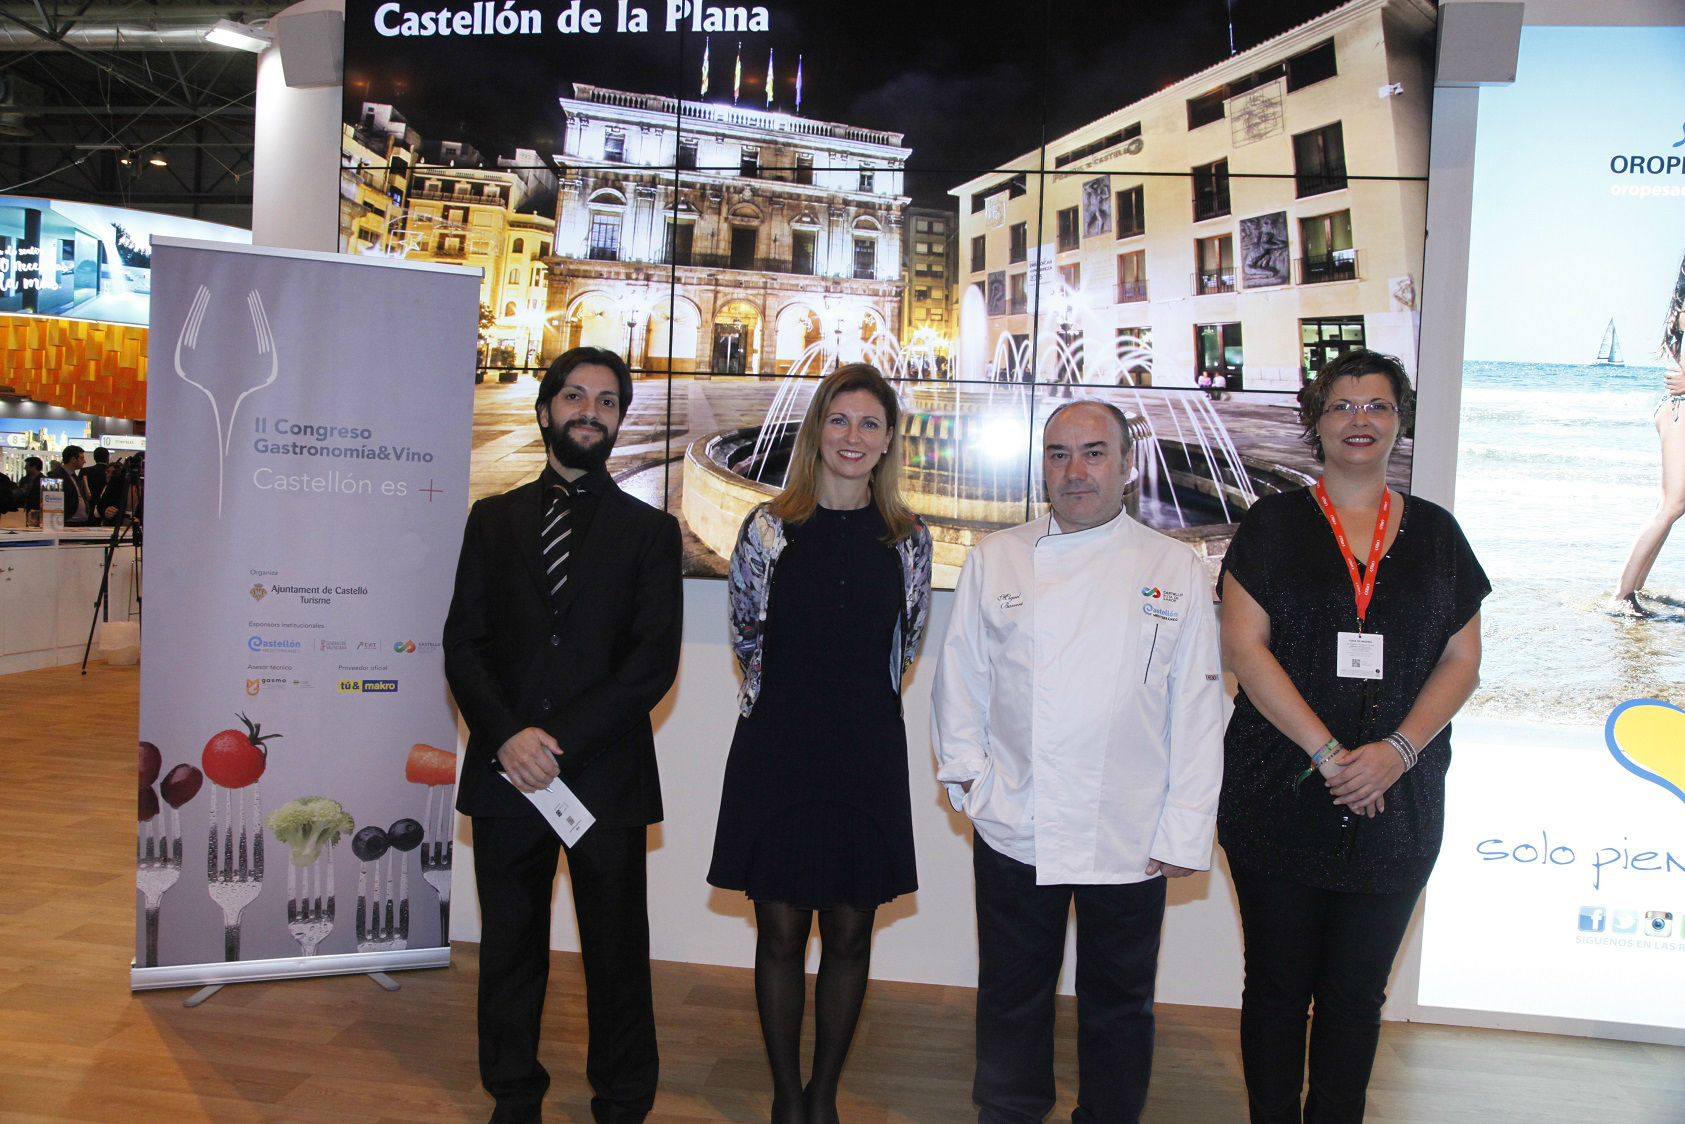 Cinc xefs amb Estrella Michelín participaran en el II Congrés de Gastronomía&Vi